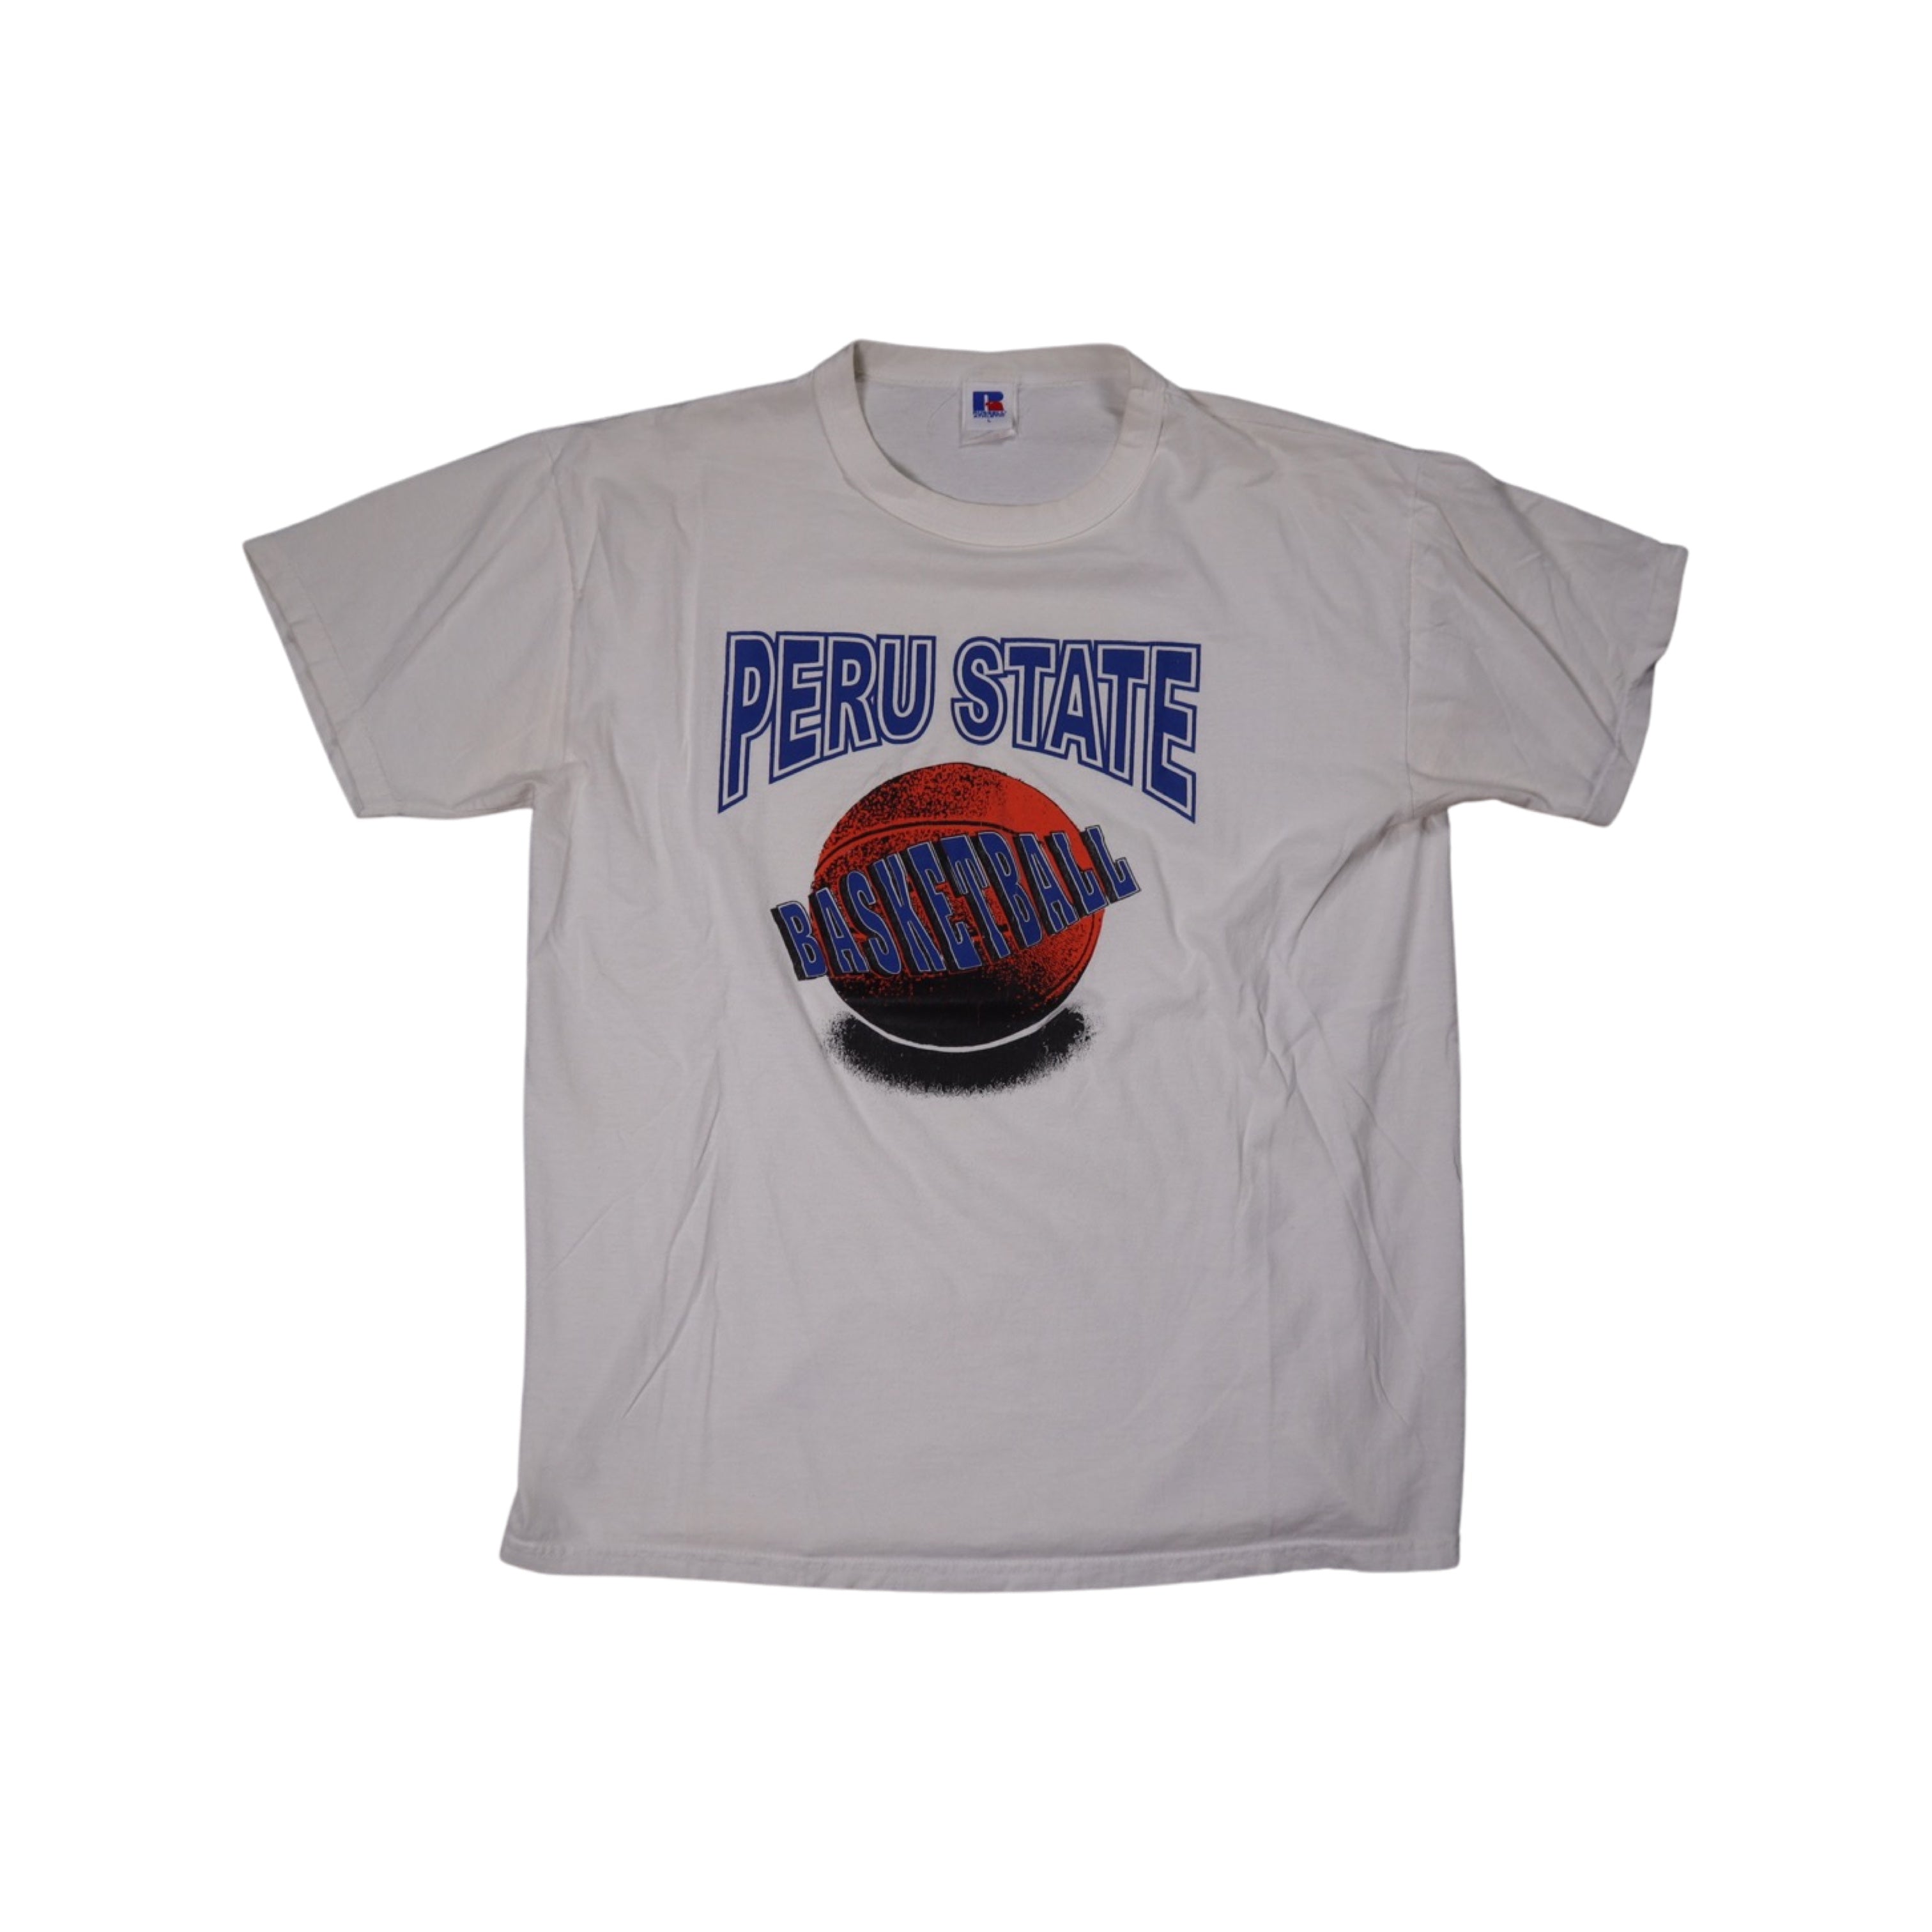 Peru State Basketball 90s T-Shirt (Large)